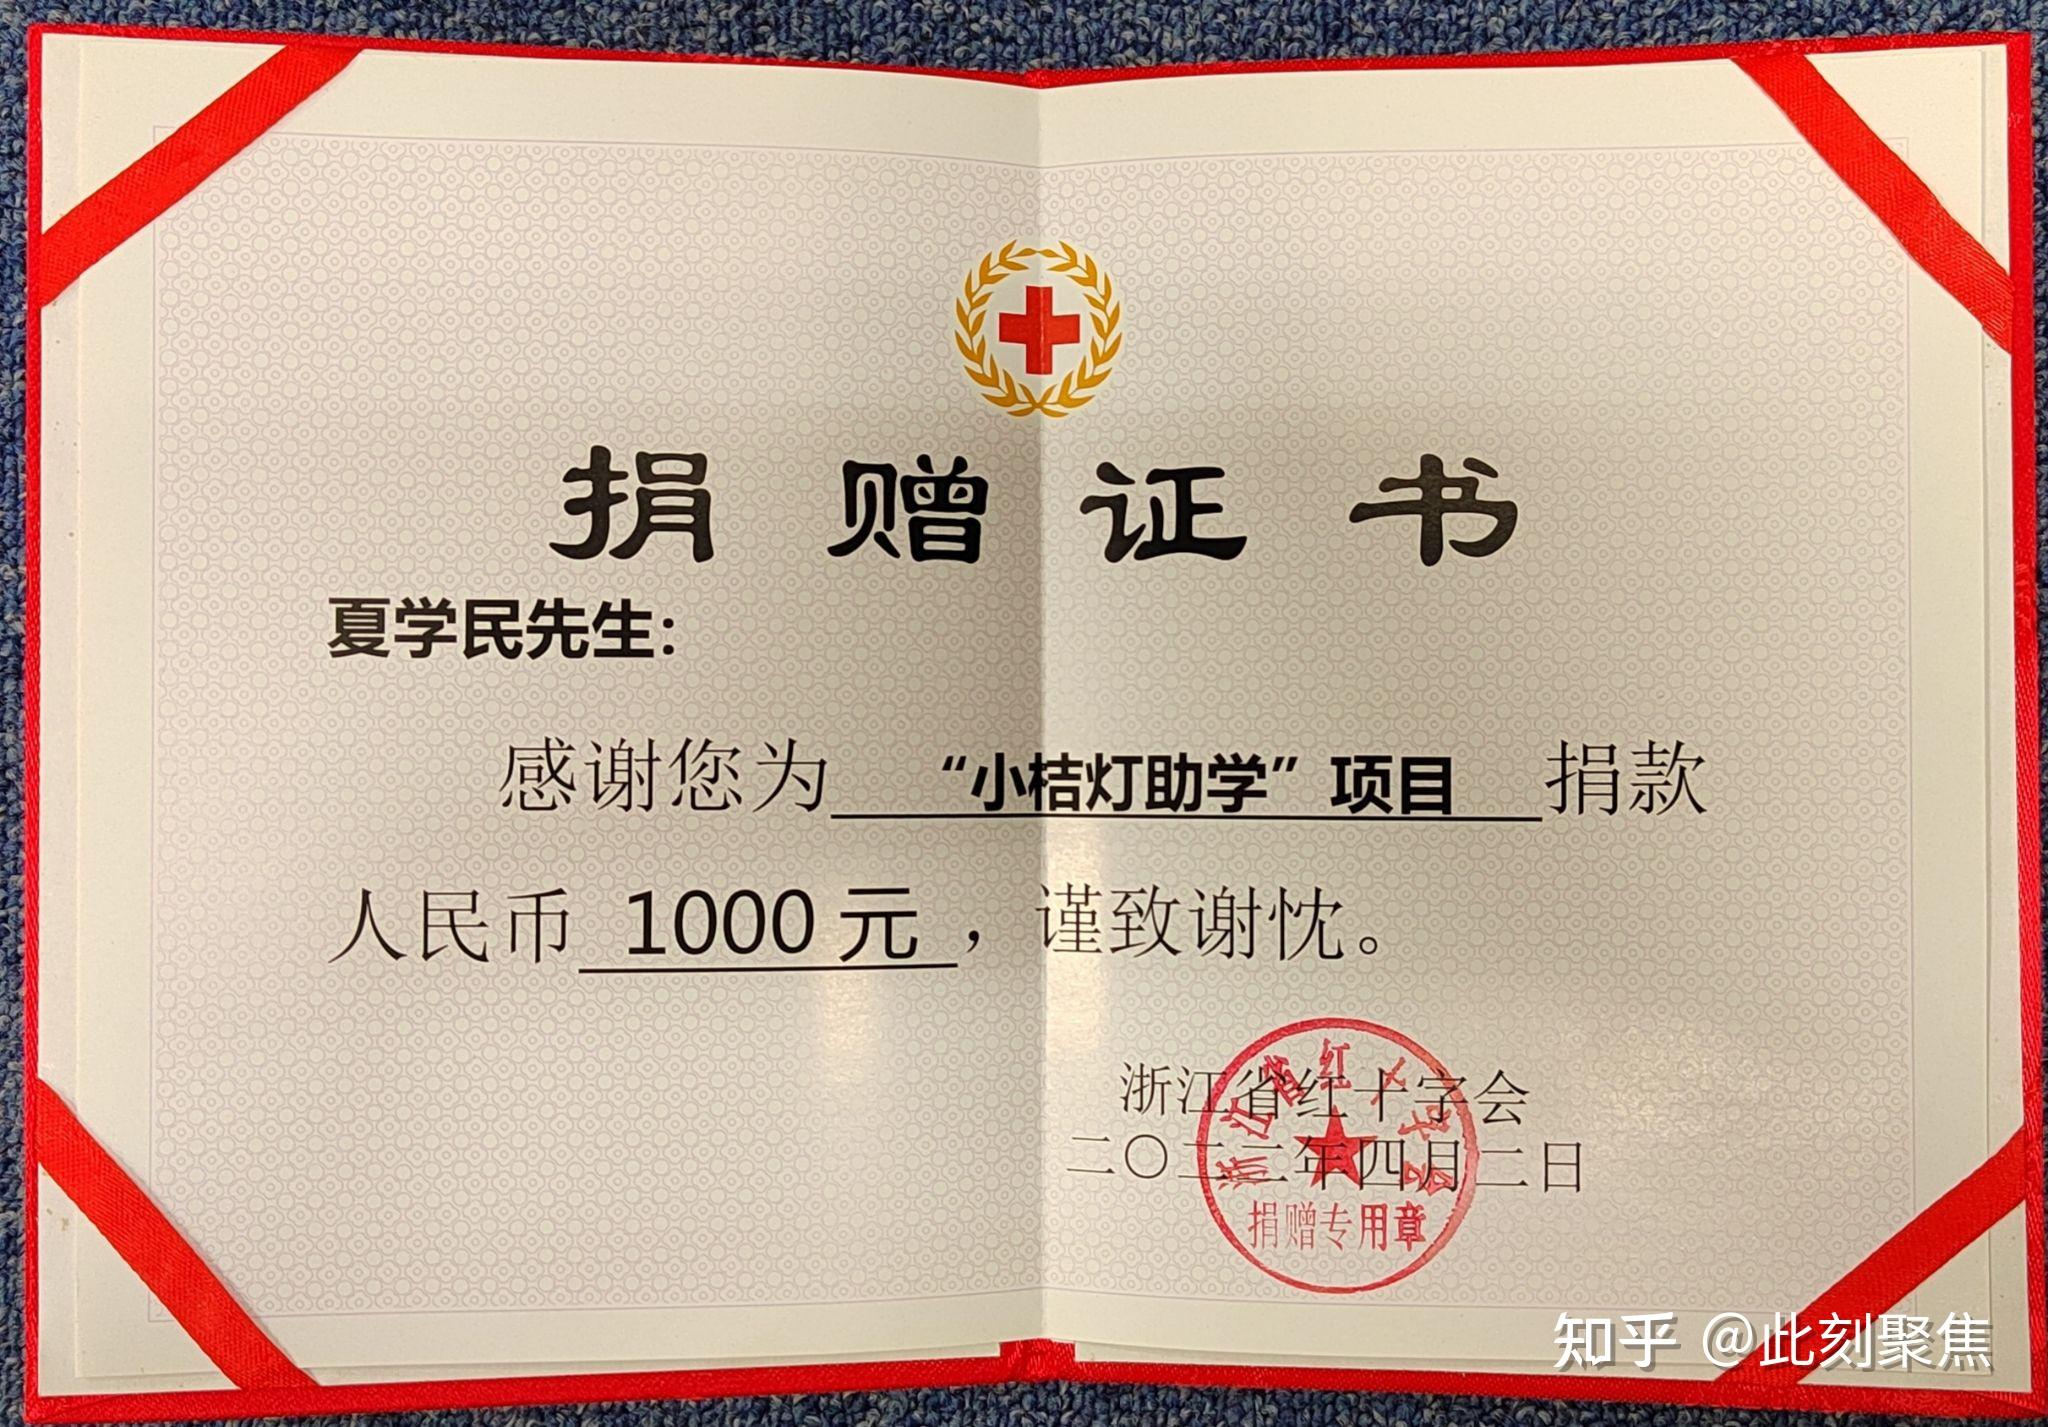 夏学民向浙江省红十字会捐款